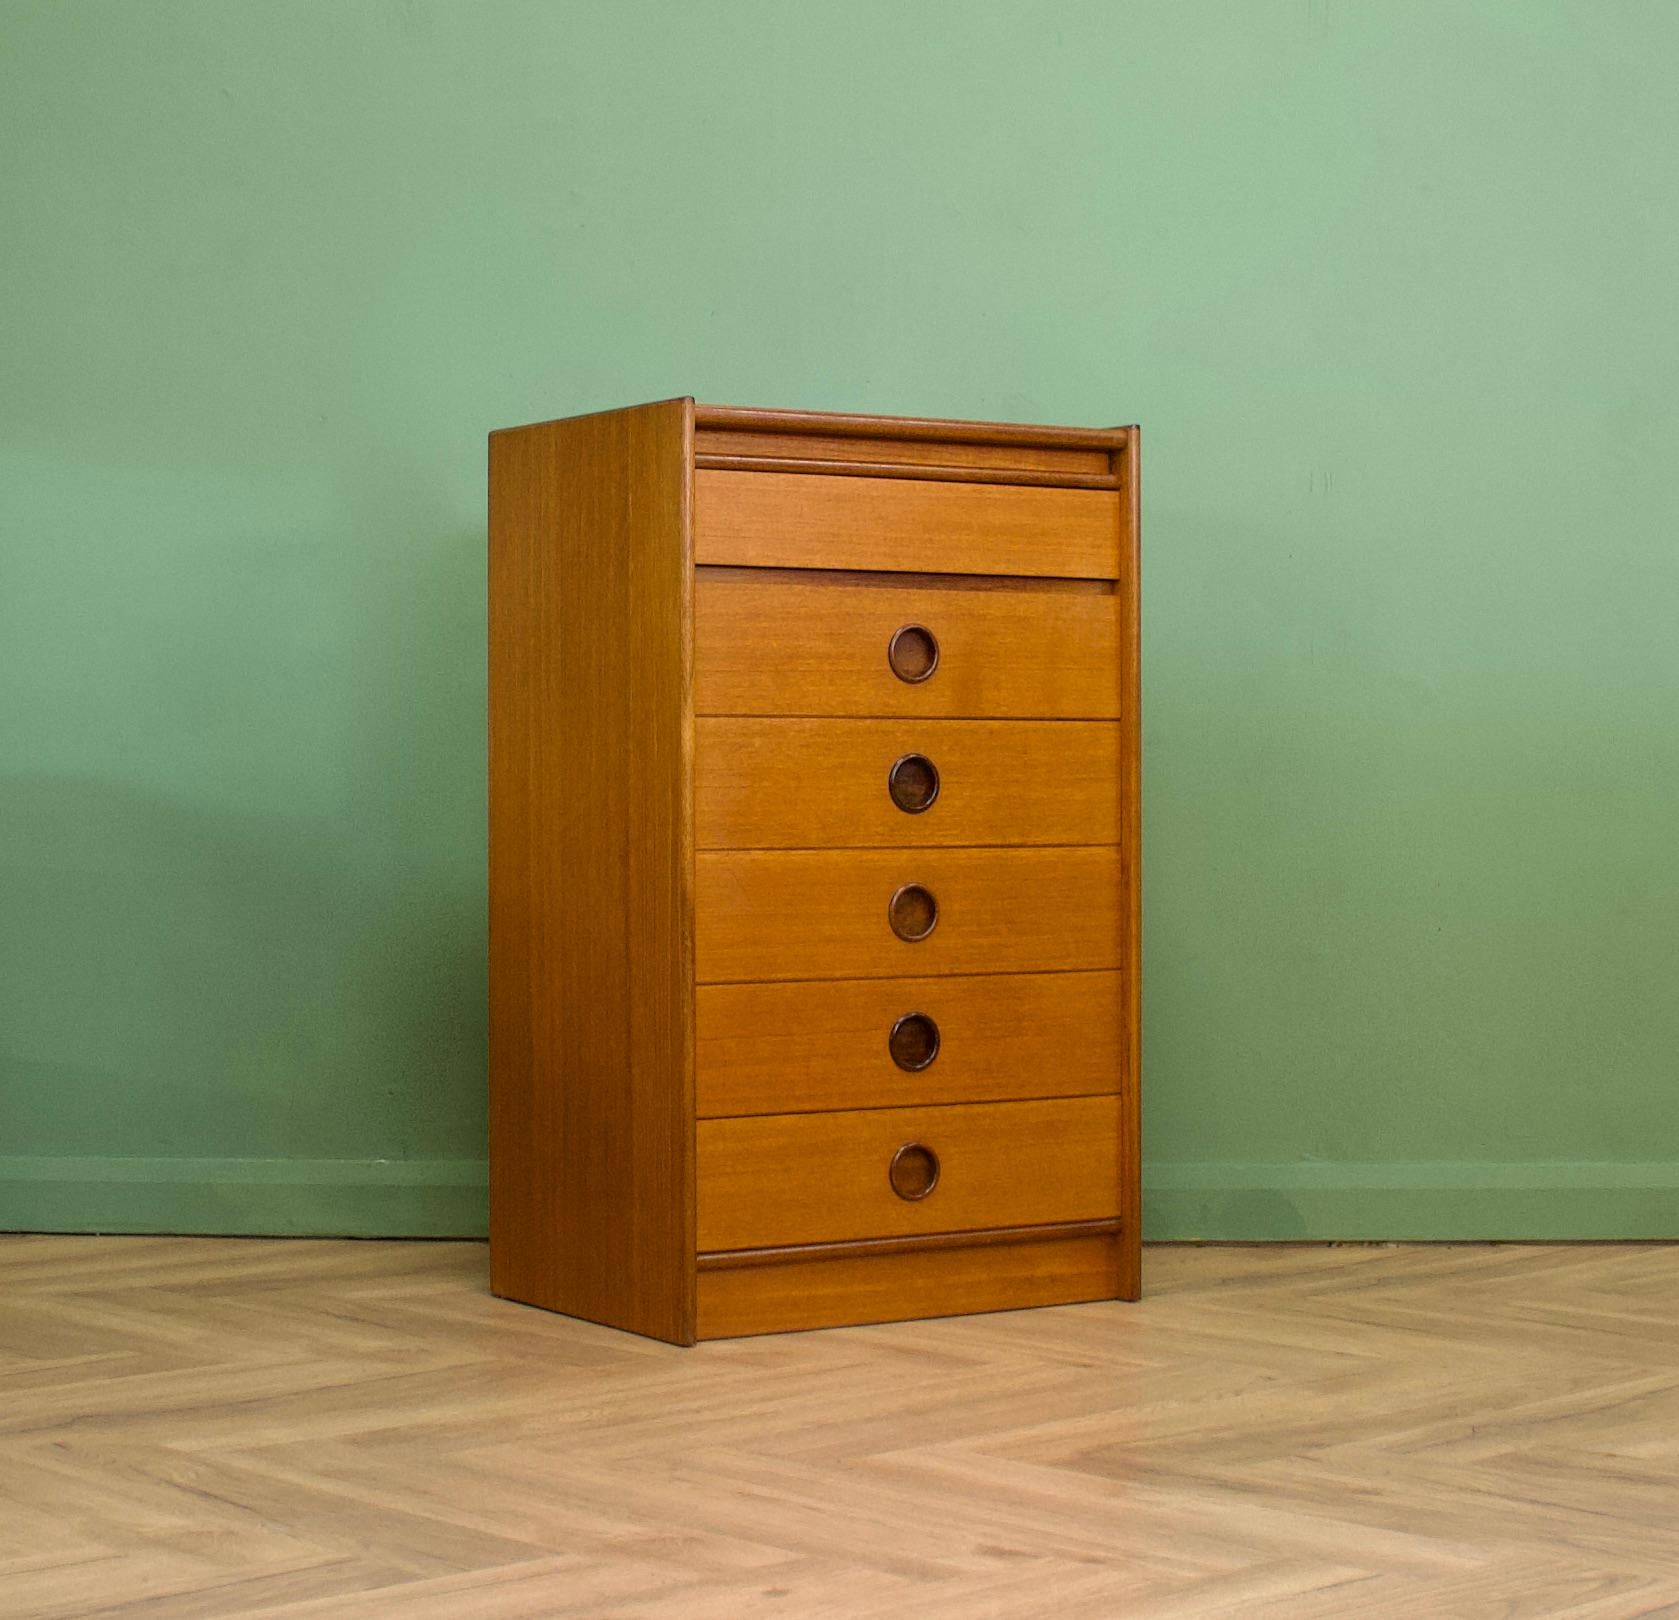 Ein Mitte des Jahrhunderts Walnuss Tallboy Kommode von der Qualität Möbelhersteller, Bath Cabinet Makers
Insgesamt gibt es sechs Schubladen - jede mit einem eingelassenen, runden Griff aus massivem Teakholz